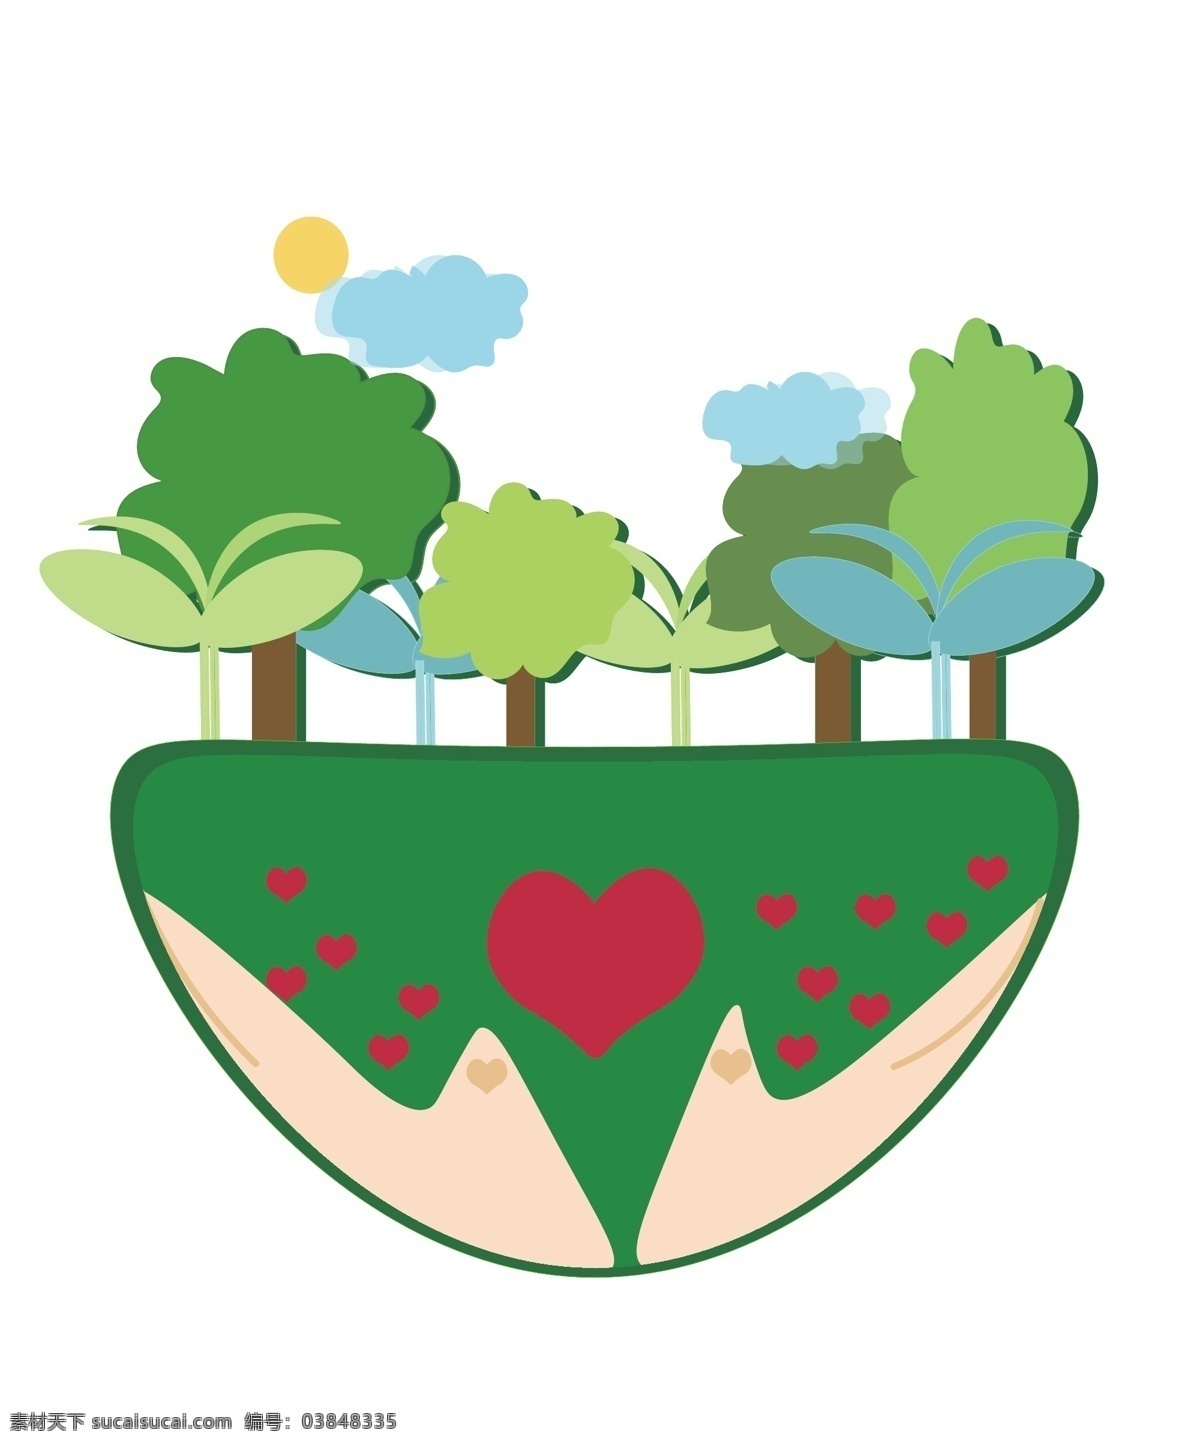 手绘 爱护 树木 公益 插画 爱护树木插画 手绘绿色树木 手绘红色爱心 手绘环保插画 绿色植物 大自然插画